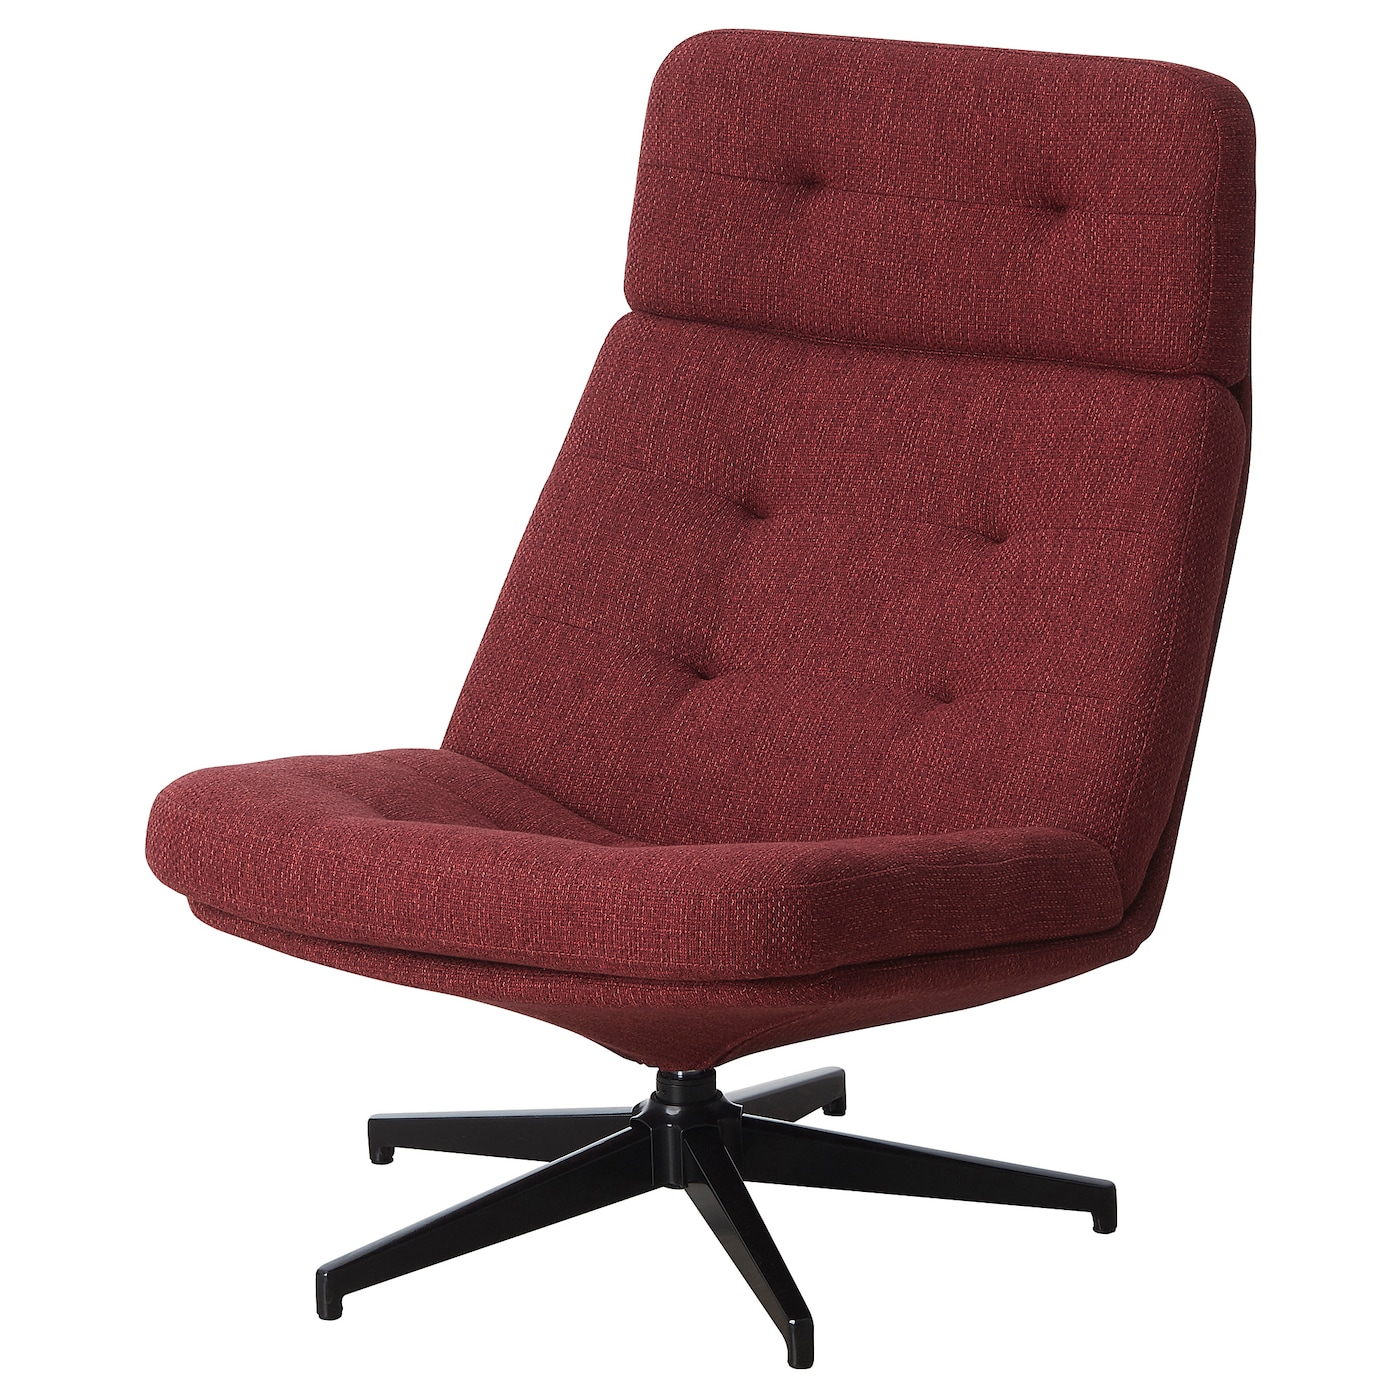 ХАВБЕРГ Вращающееся кресло, Лейде красно-коричневый HAVBERG IKEA регулируемое офисное кресло для дома компьютерное кресло вращающееся кресло для компьютера